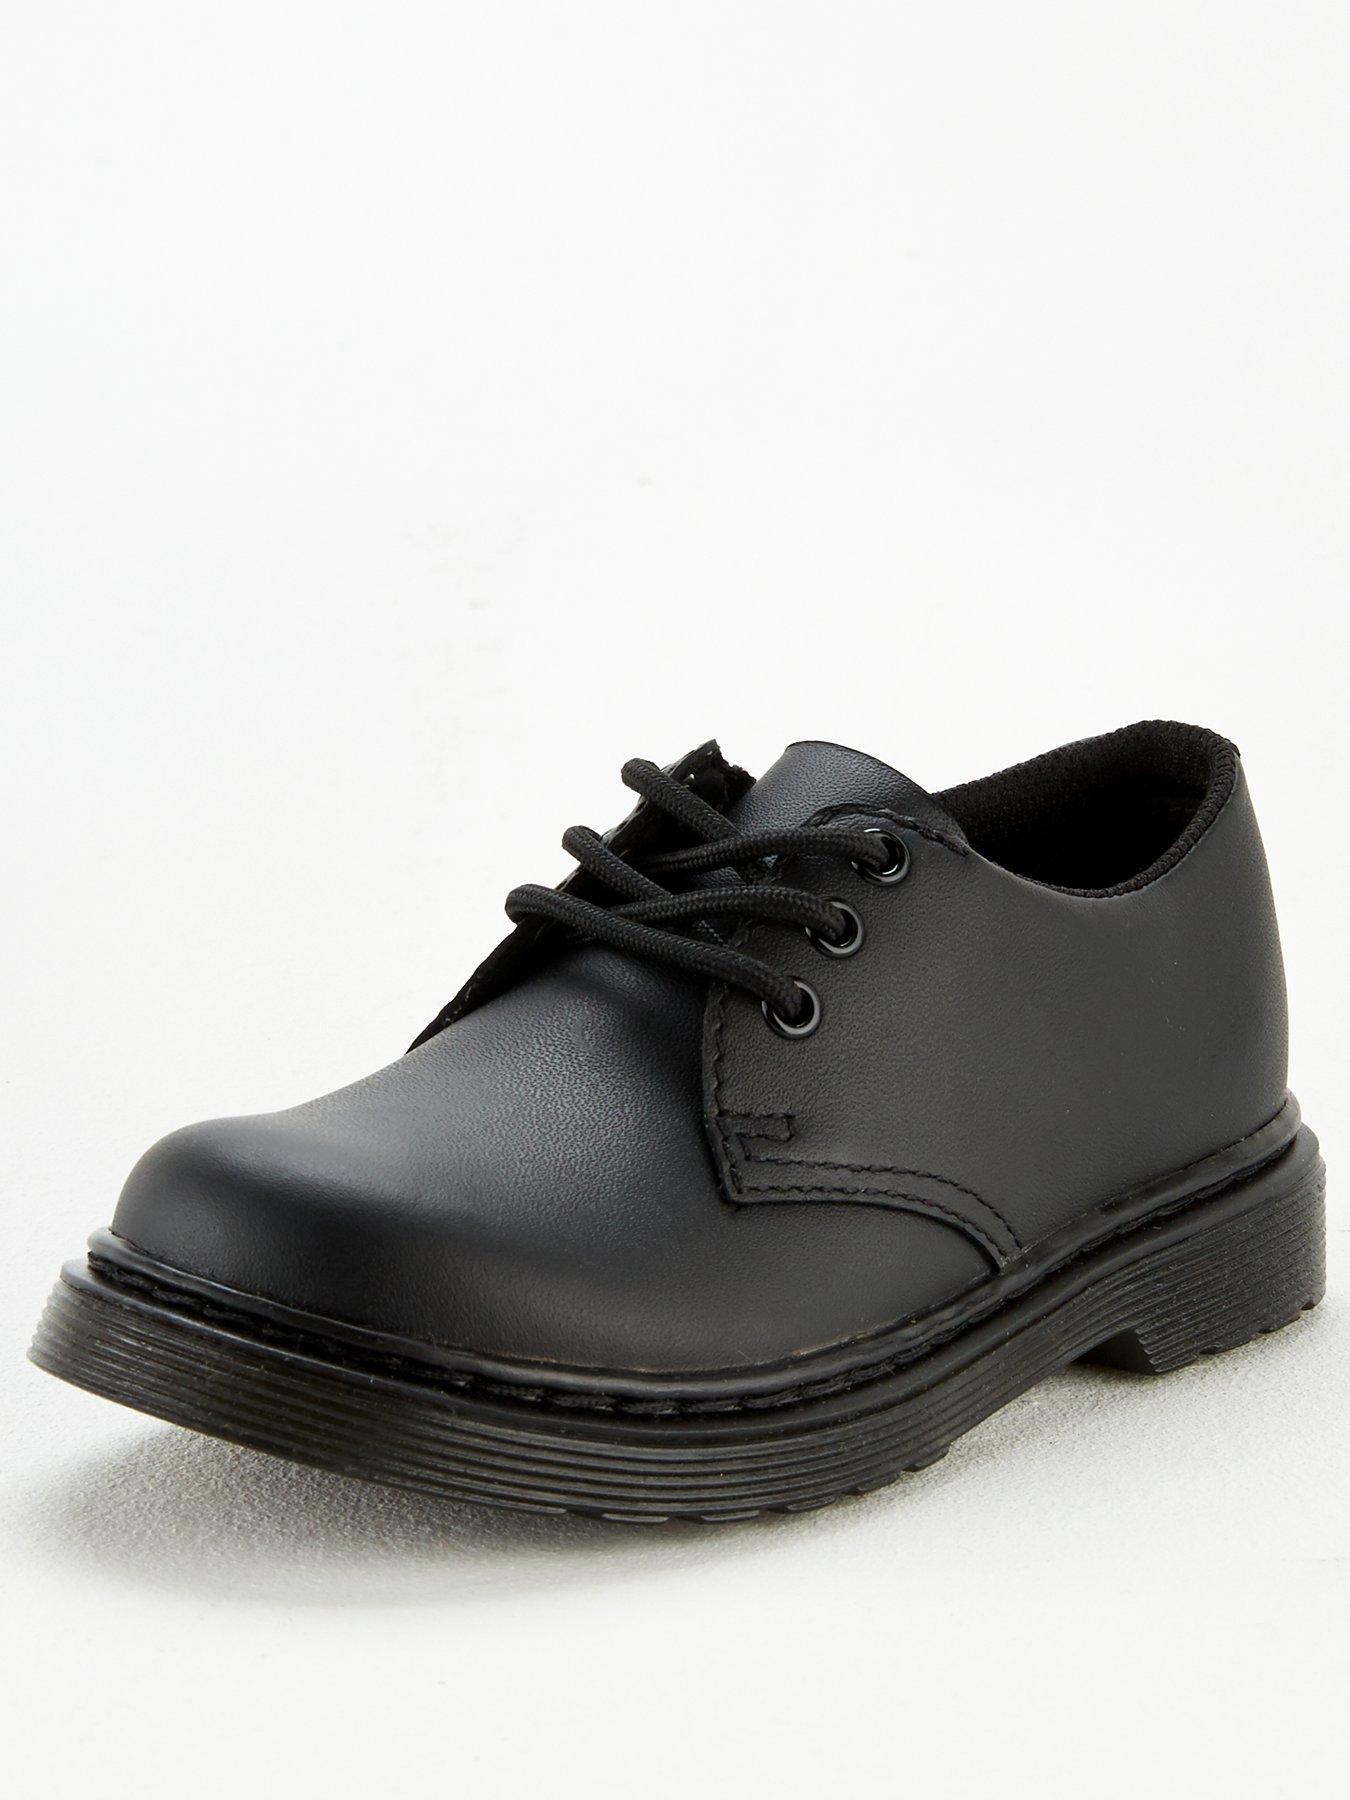 dr martens school shoes size 7